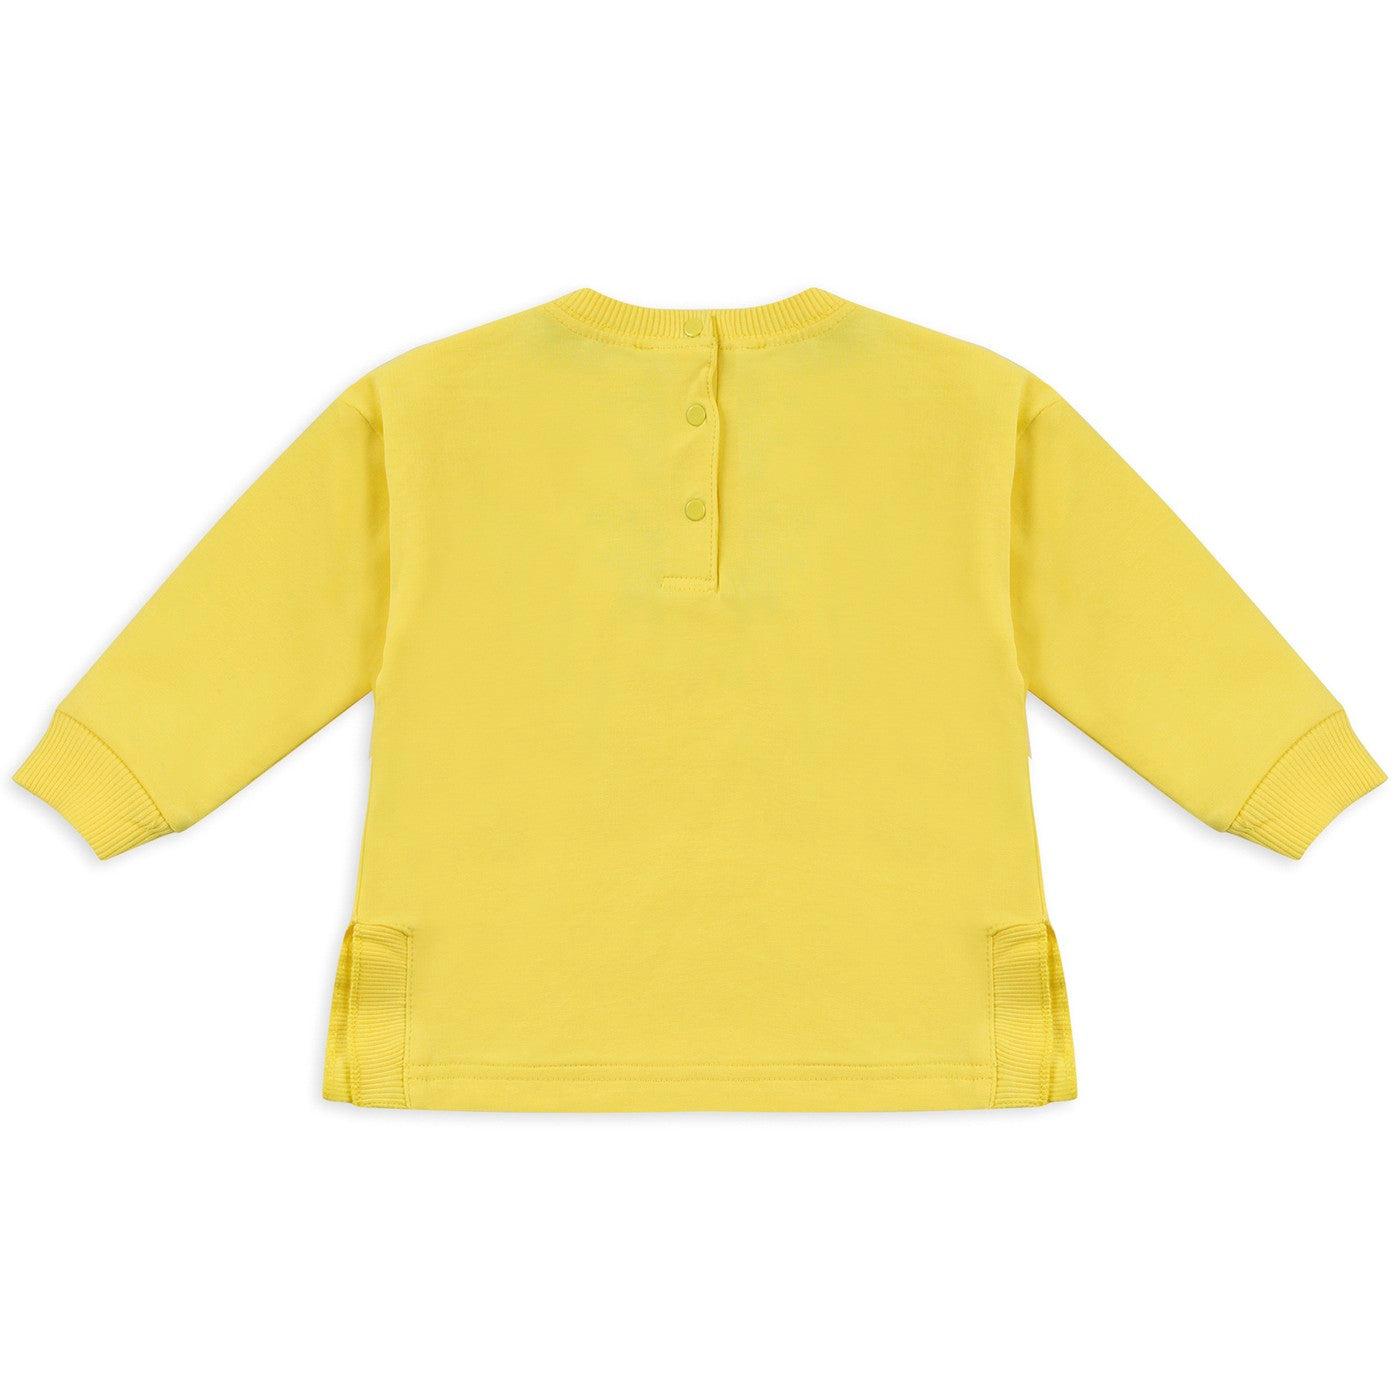 Selected image for PANÇO Duks za devojčice Bloomi žuta